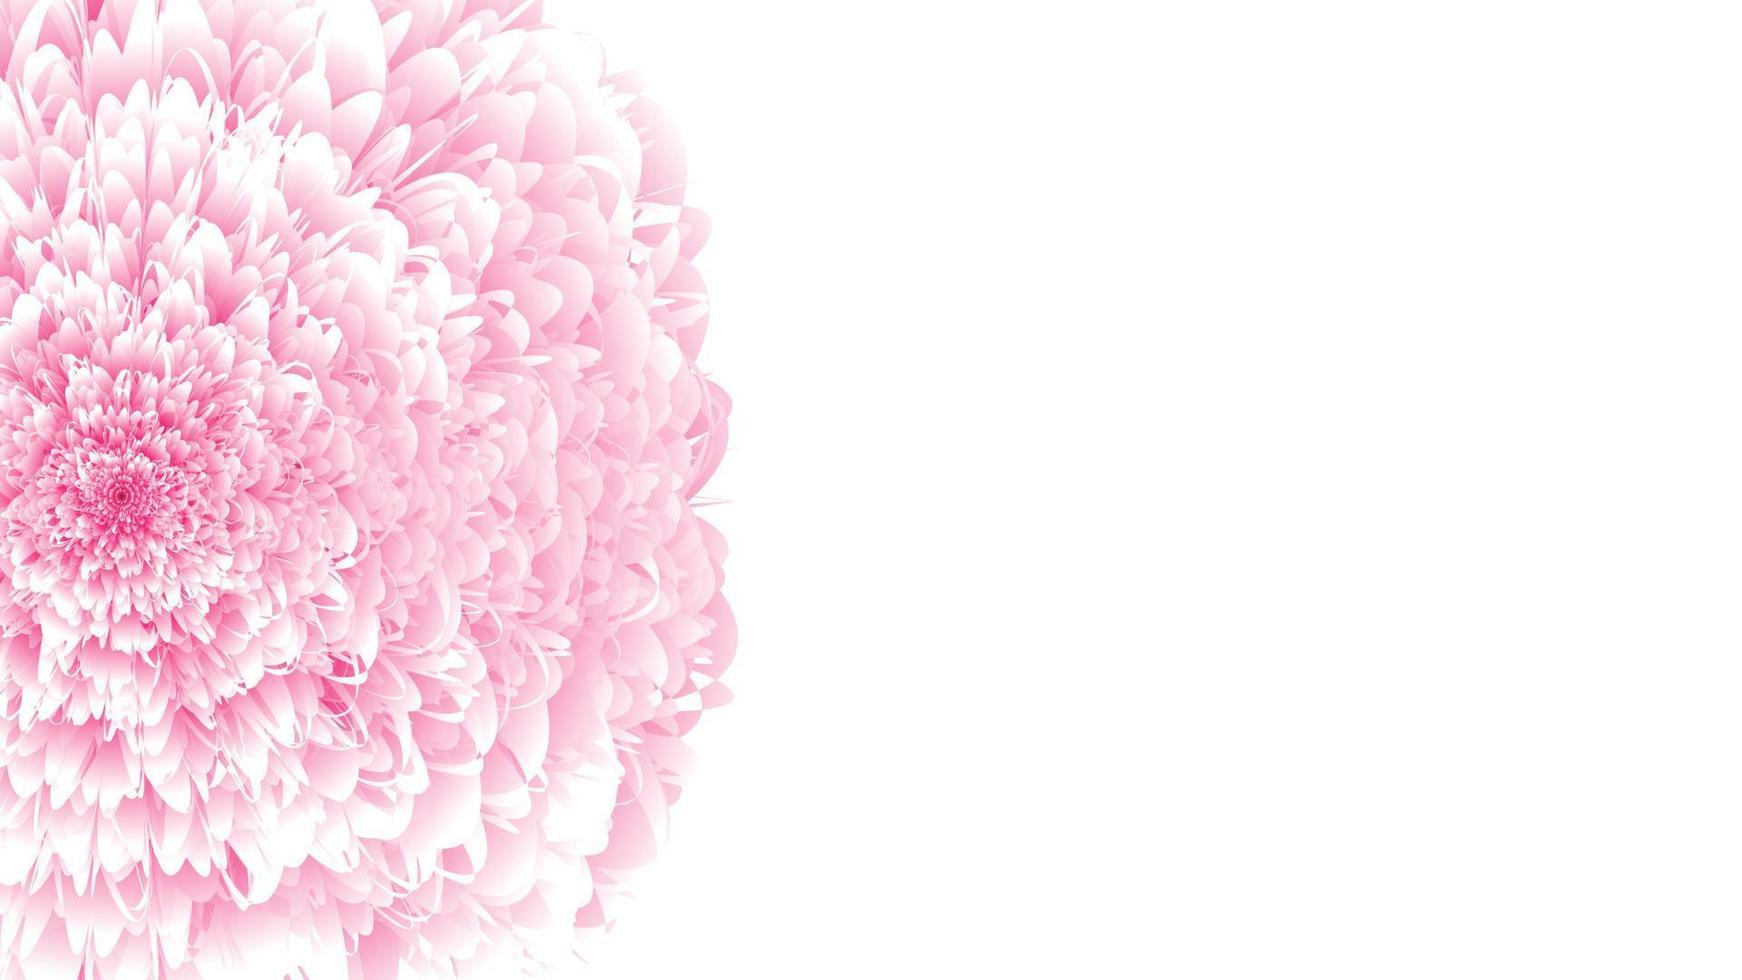 flauschige 3D-Blume. rosa volumetrische chrysantheme mit weichen frühlingsweißen blütenblättern realistisch üppige offene knospe natürliches maßwerk der herbstpfingstrose mit runder kappe aus gewellten zarten texturen festlicher live-vektor vektor